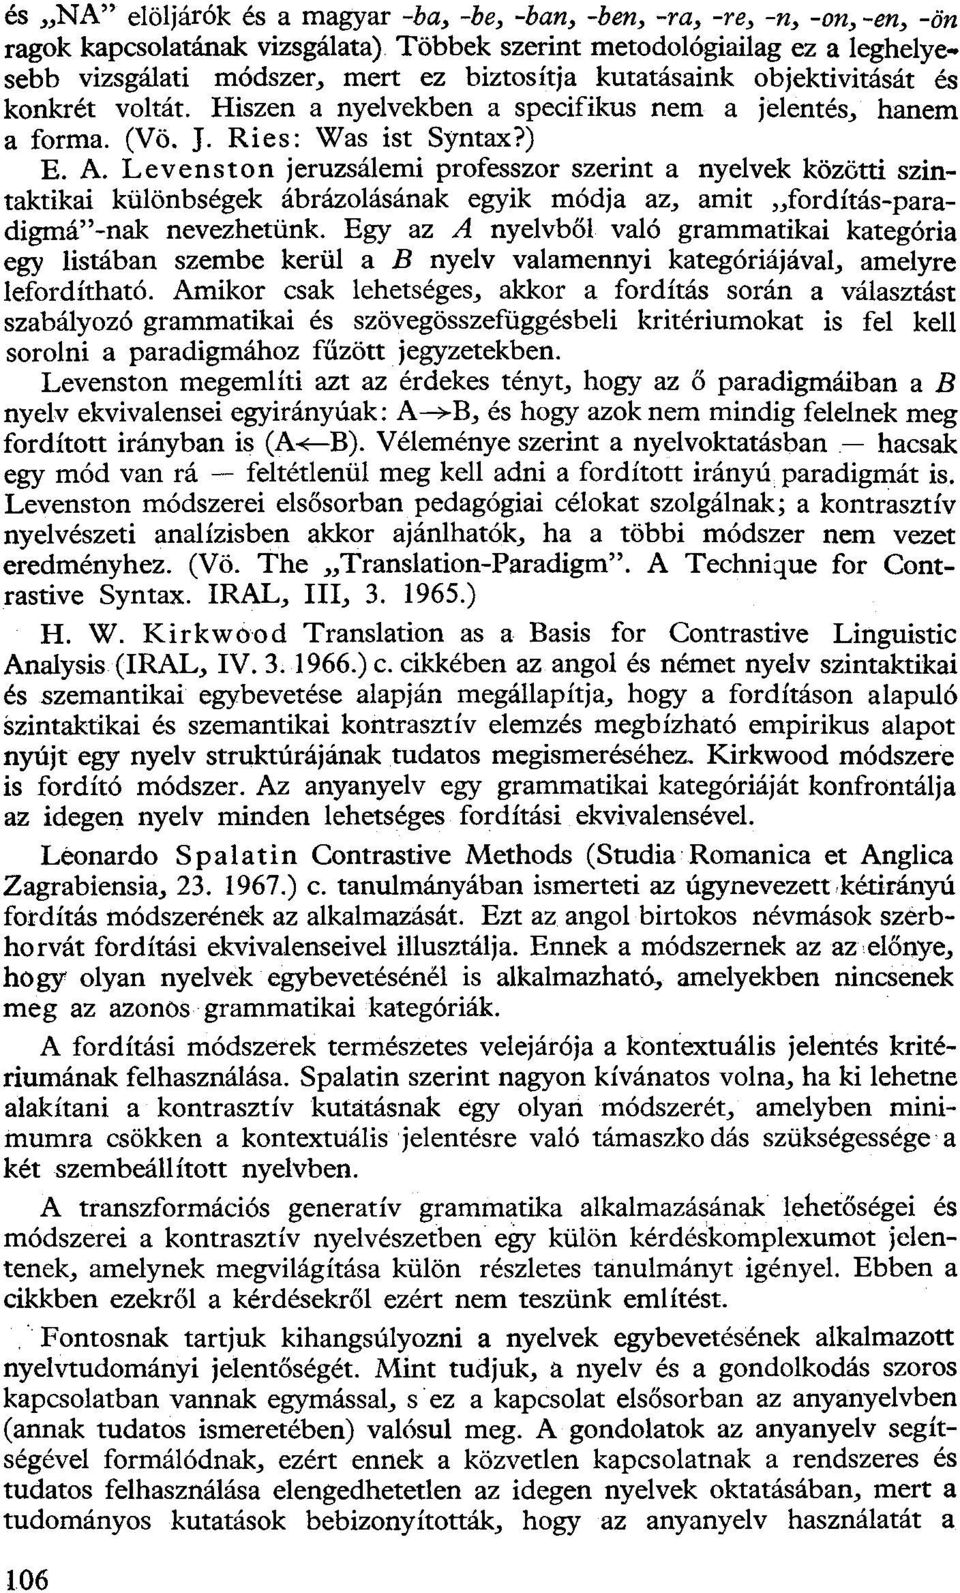 Levenston jeruzsálemi professzor szerint a nyelvek közötti szintaktikai különbségek ábrázolásának egyik módja az, amit fordítás-paradigmá"-nak nevezhetünk.